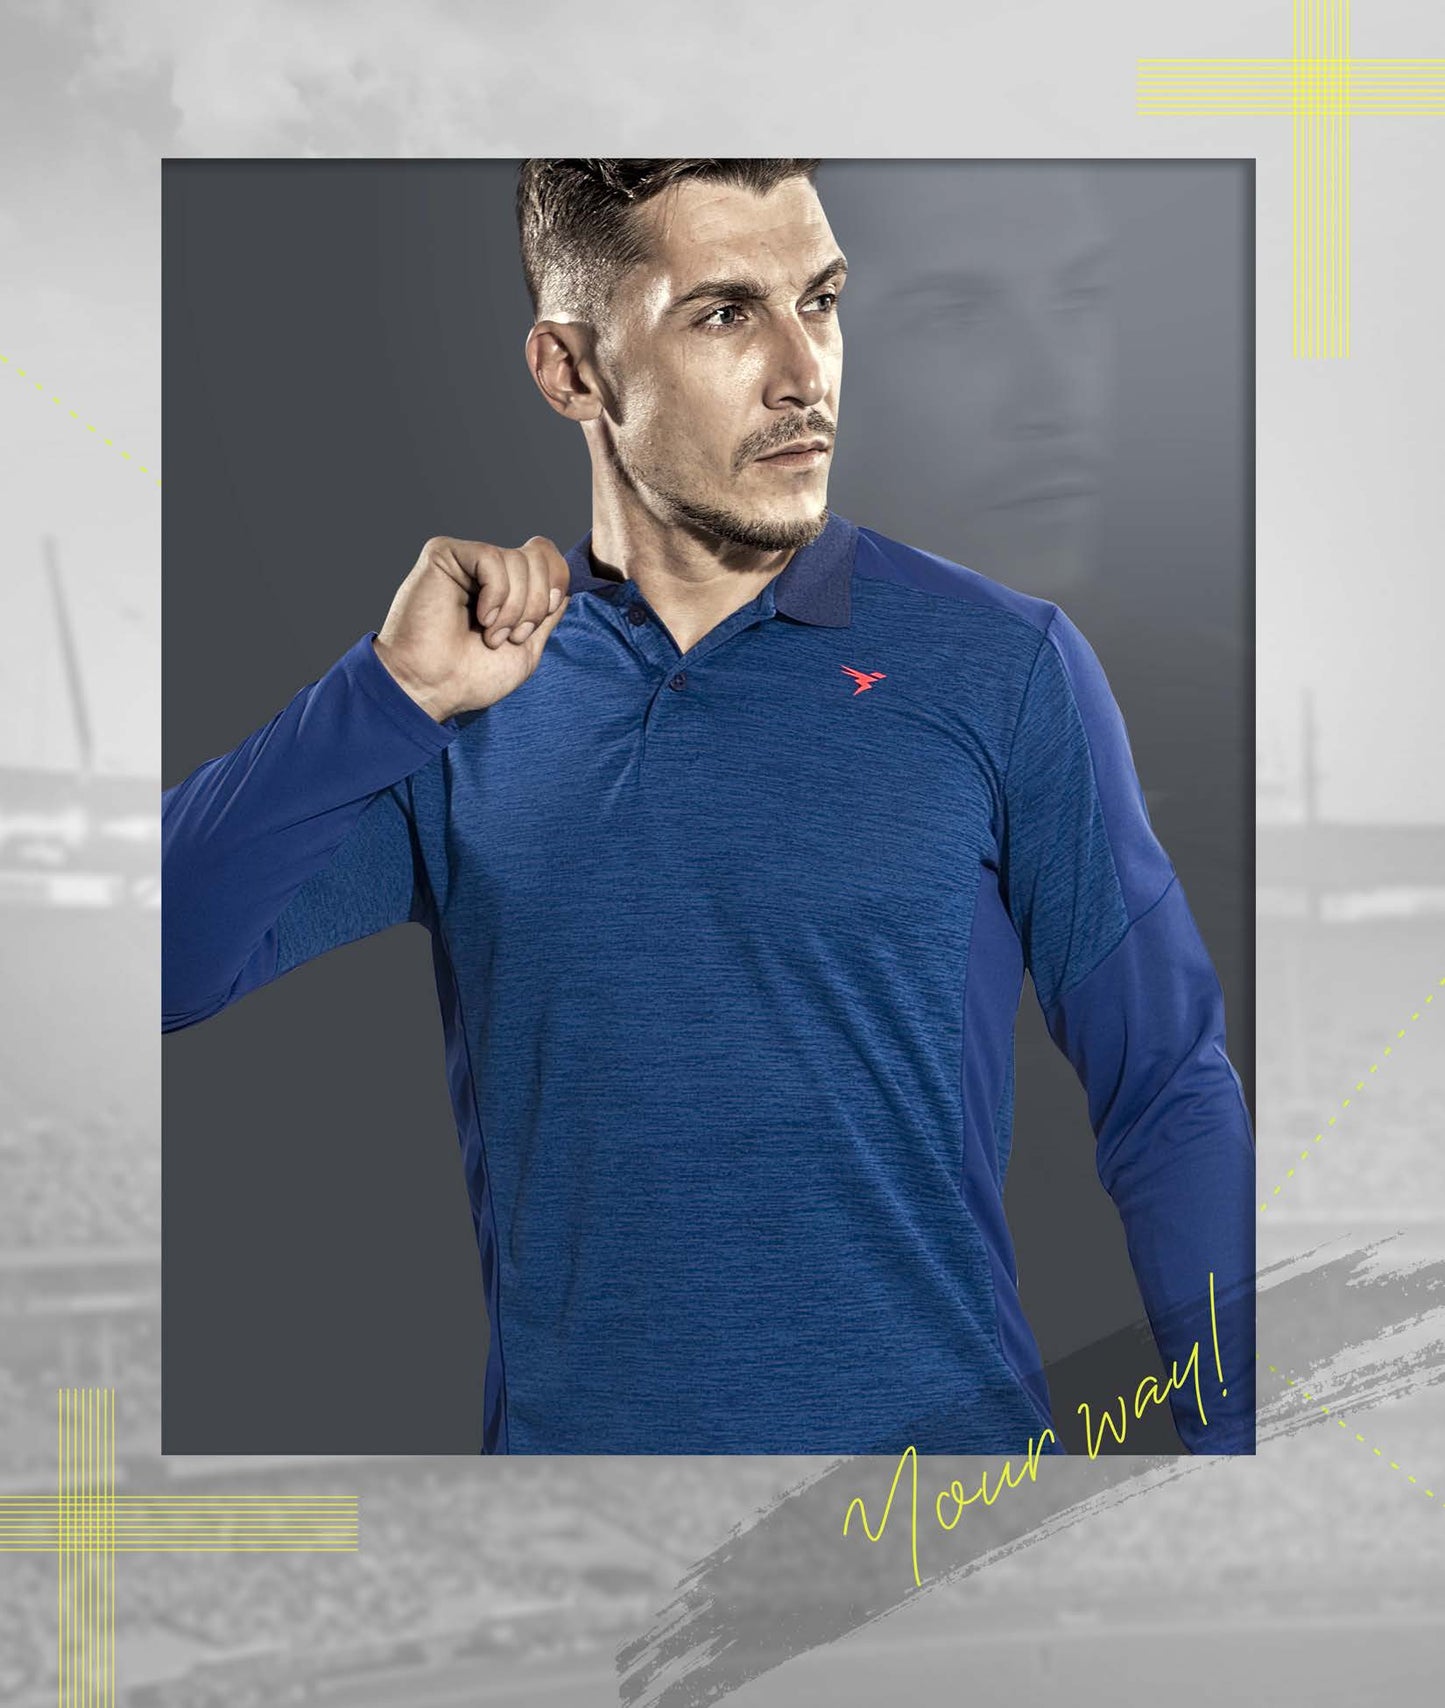 TechnoSport Polo Neck Full Sleeve Dry Fit T-Shirt for Men P-453 (Royal Blue)